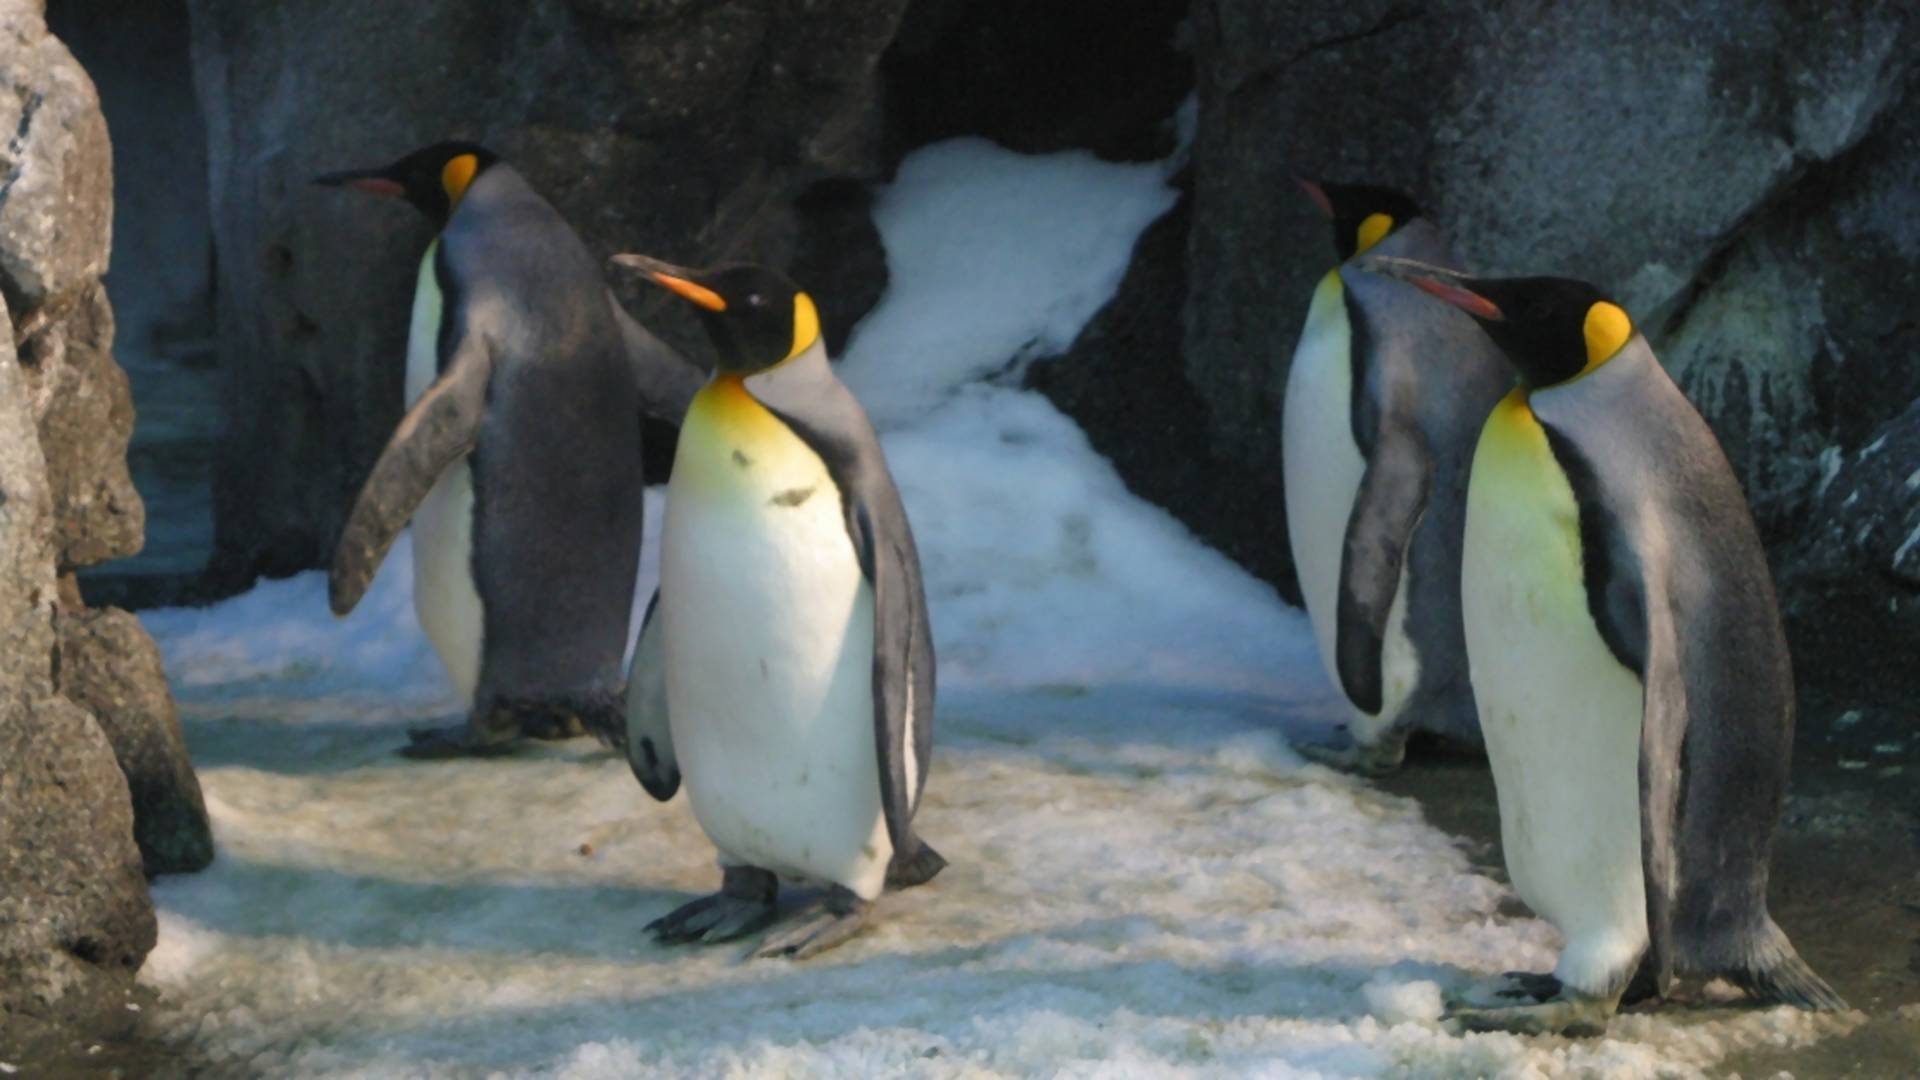 Párik homosexuálnych tučniakov spôsobil chaos v ZOO. Ujal sa nechceného mláďaťa